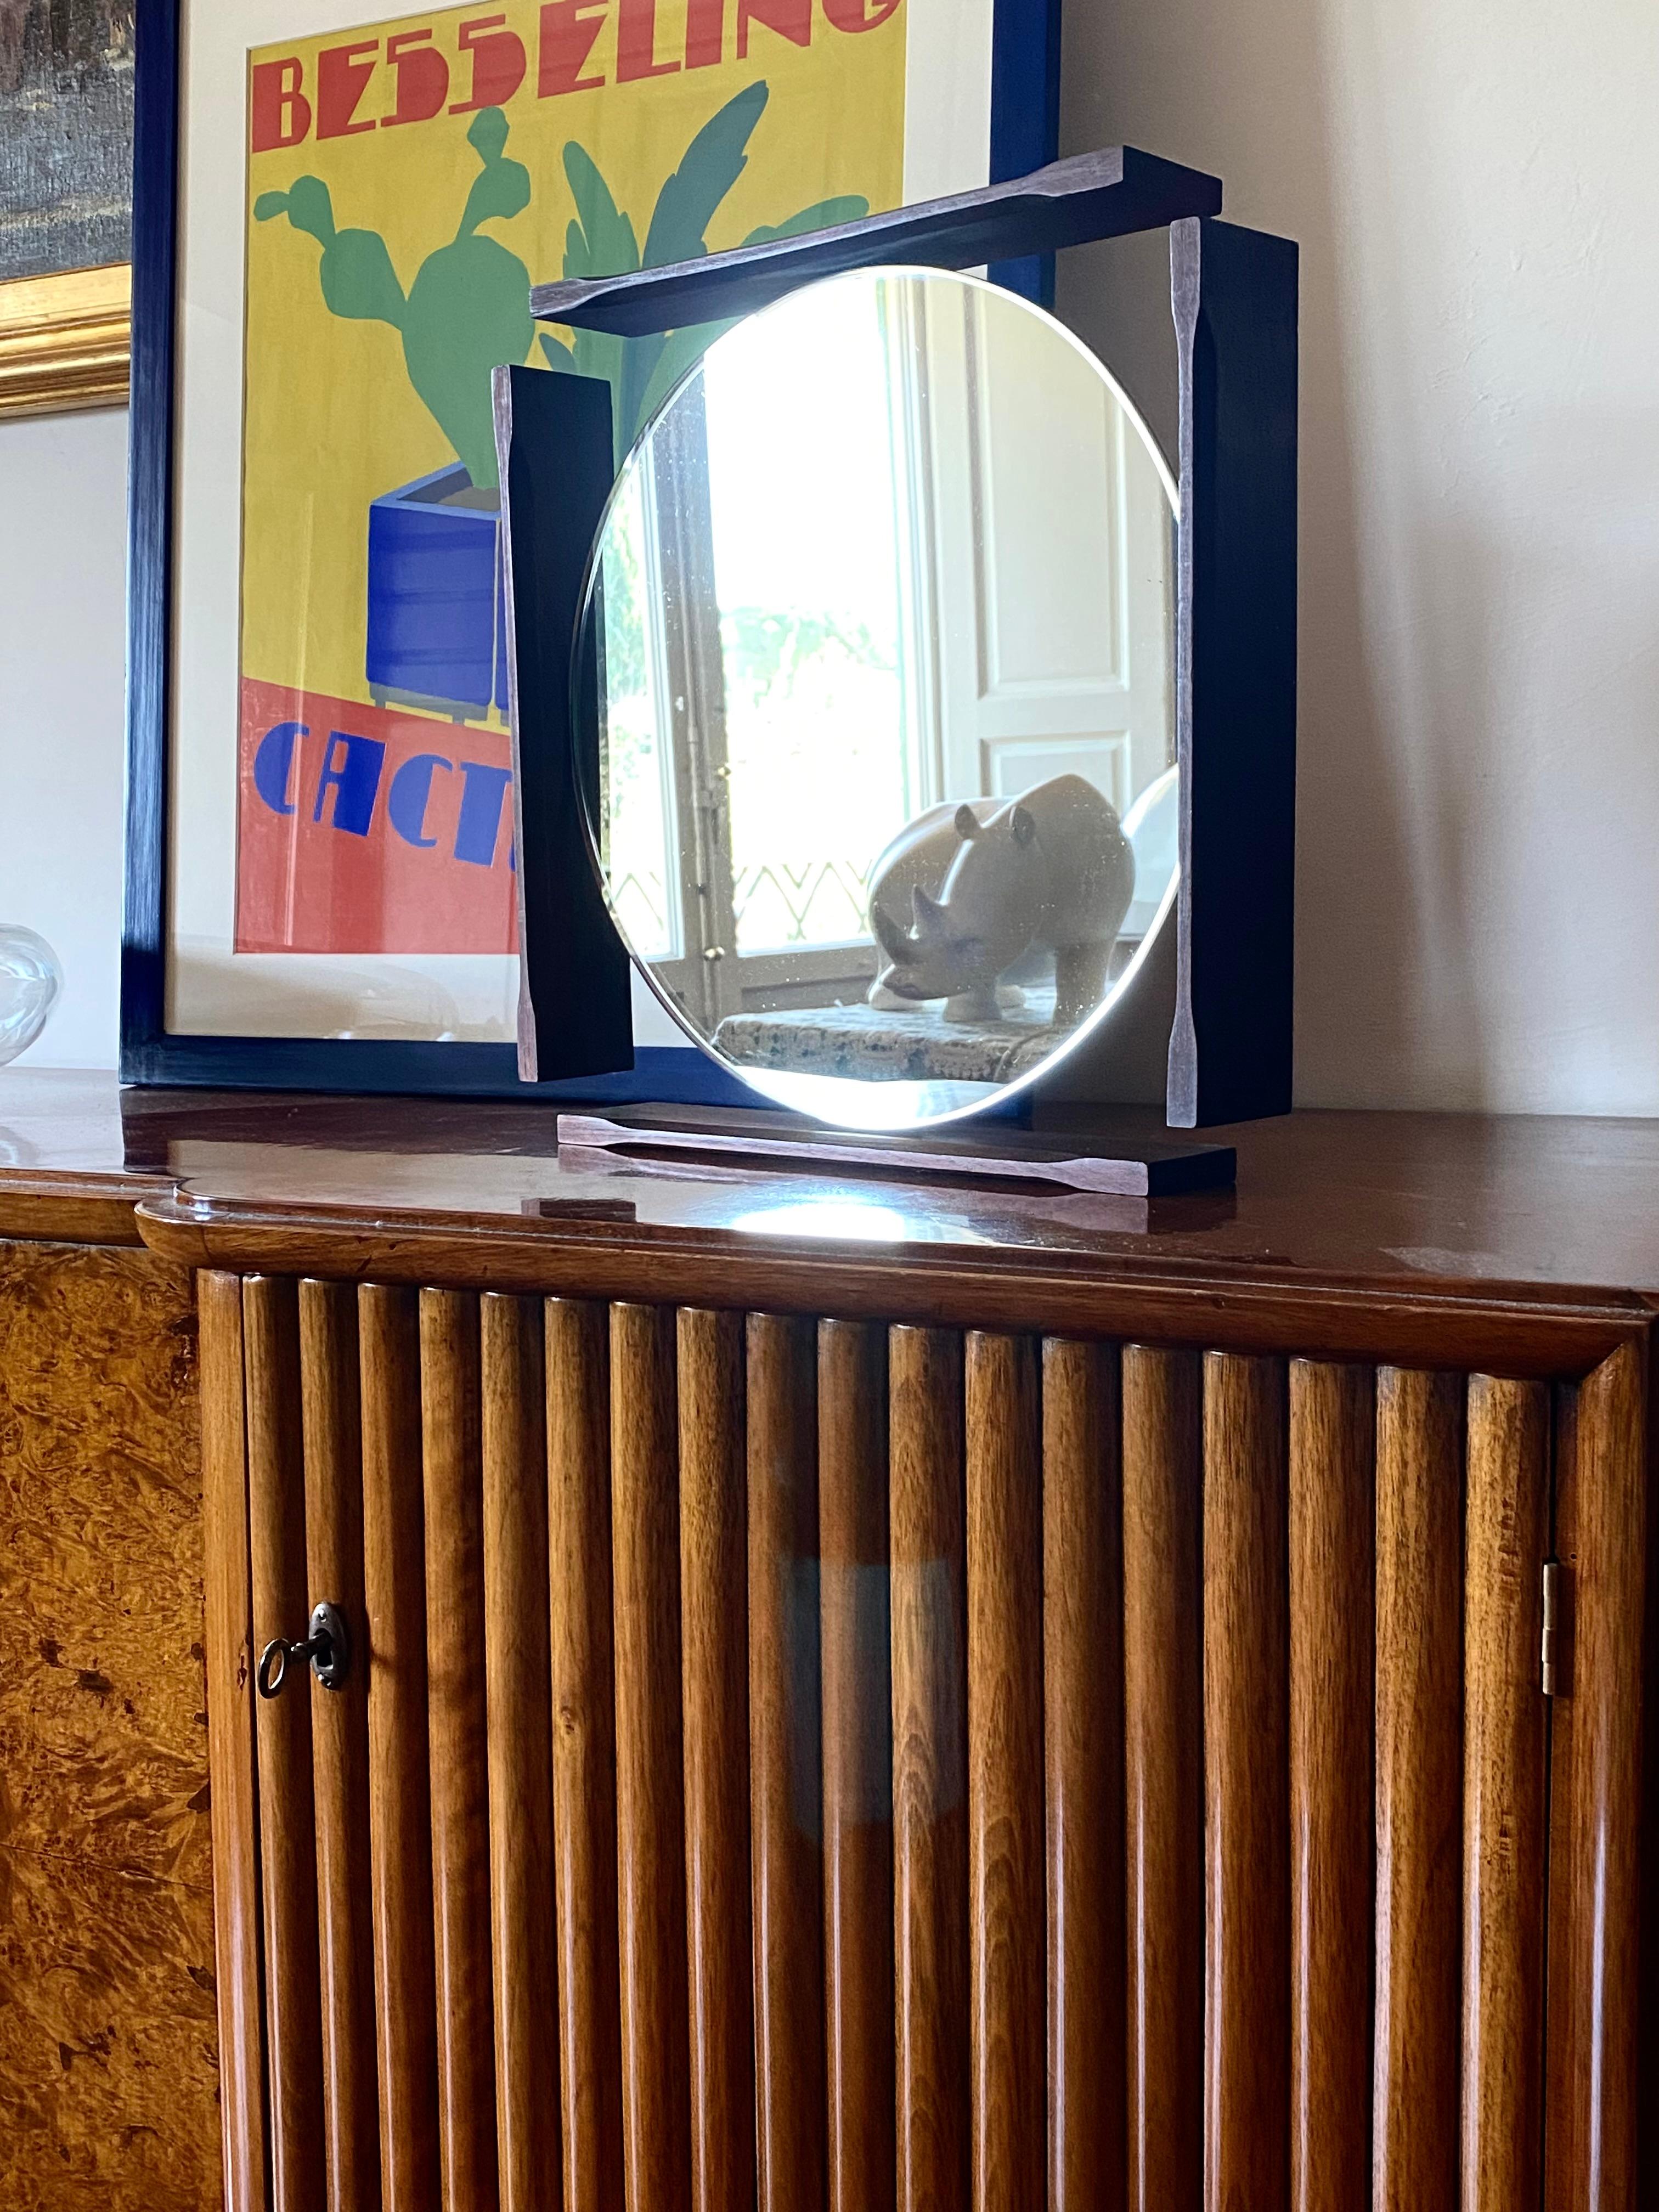 Tisch / Wandspiegel / Eitelkeit aus der Mitte des Jahrhunderts

Italien 1970er Jahre

teakholz, Glas

40 cm x 40 x 6,5 cm

Zustand: ausgezeichnet, entsprechend dem Alter und dem Gebrauch